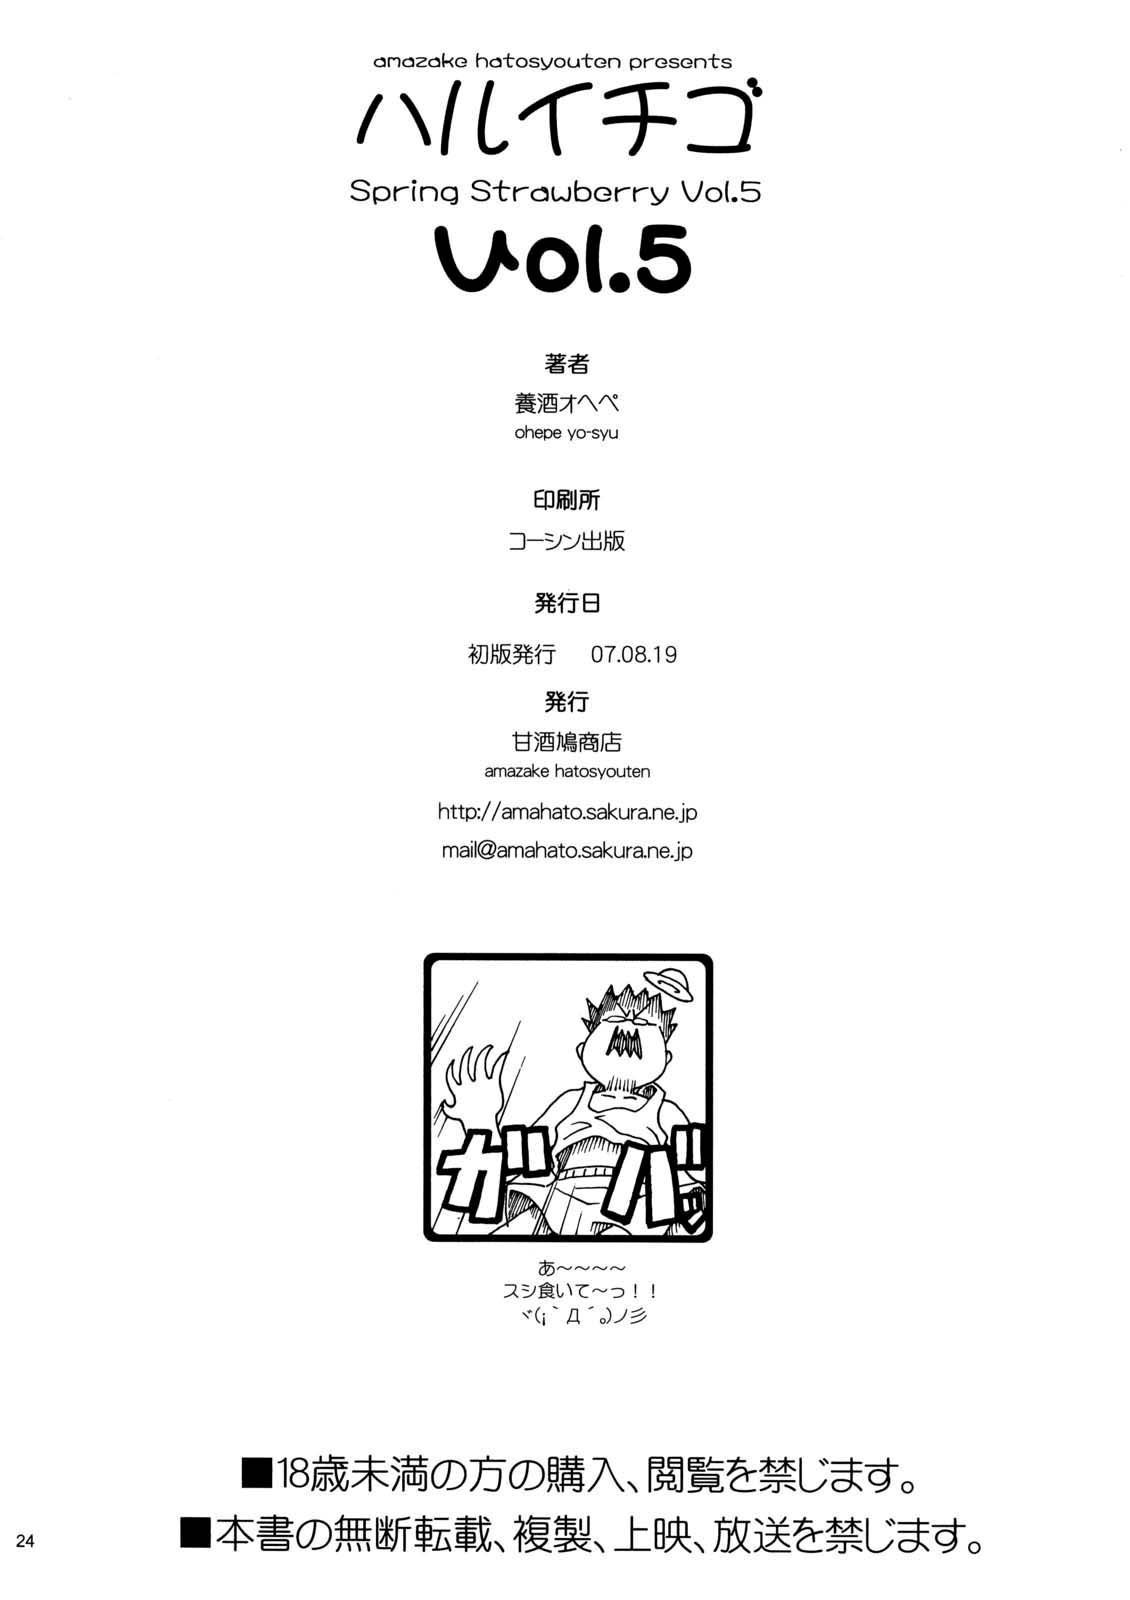 [Yoshu Ohepe] - Spring Strawberry 5 - Haruichigo vol.5 (ichigo) - (Oral, Regular Sex, Big Breasts, Doujin, English)[Brolen] 